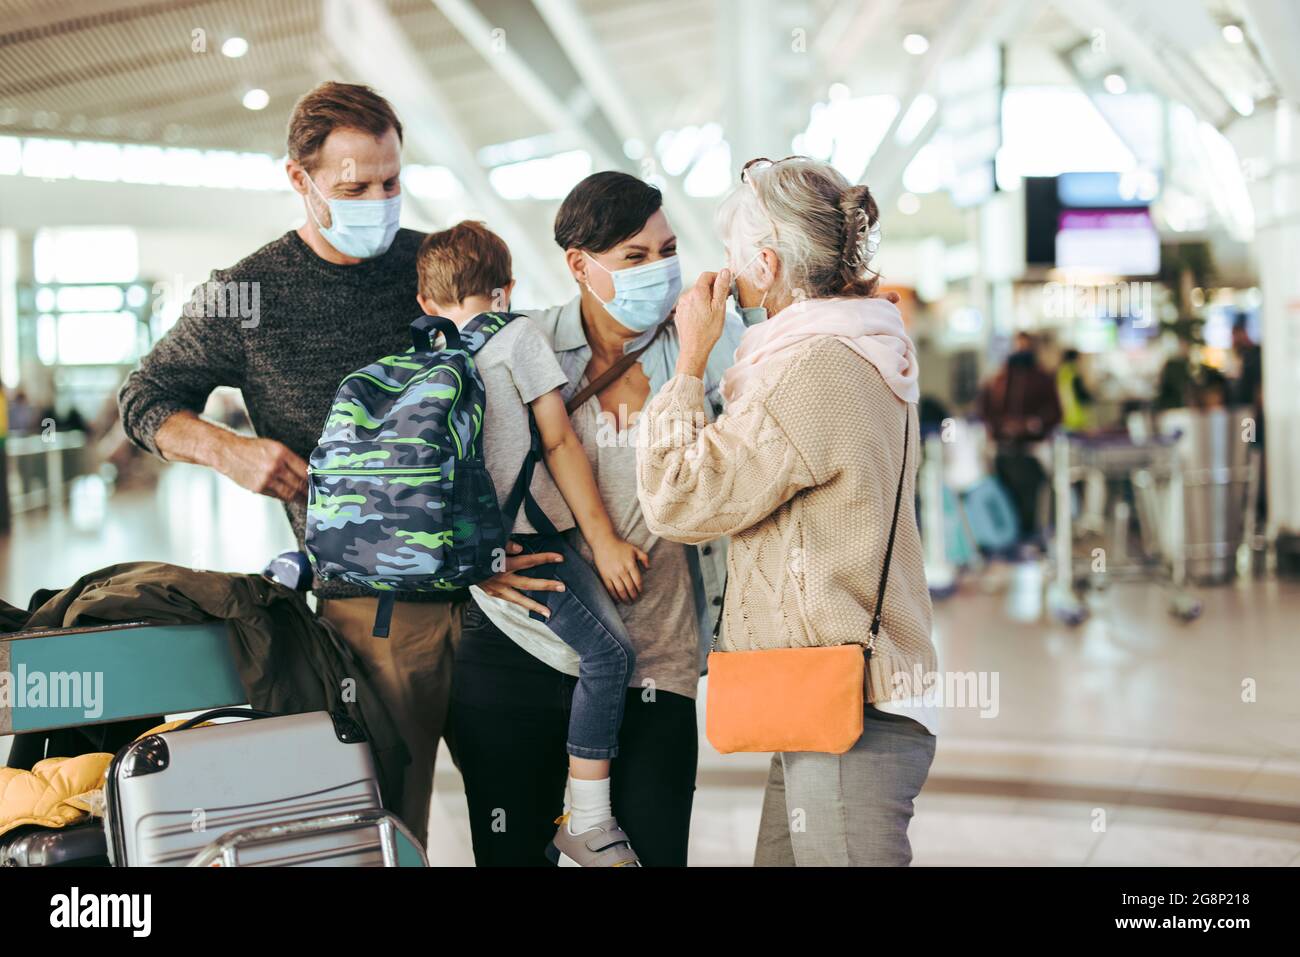 Eine ältere Frau trifft ihre Familie, die nach der Sperrung der Pandemie am Flughafen ankommt. Dreiköpfige Familie mit Gesichtsmaske trifft Großmutter am Flughafen. Stockfoto